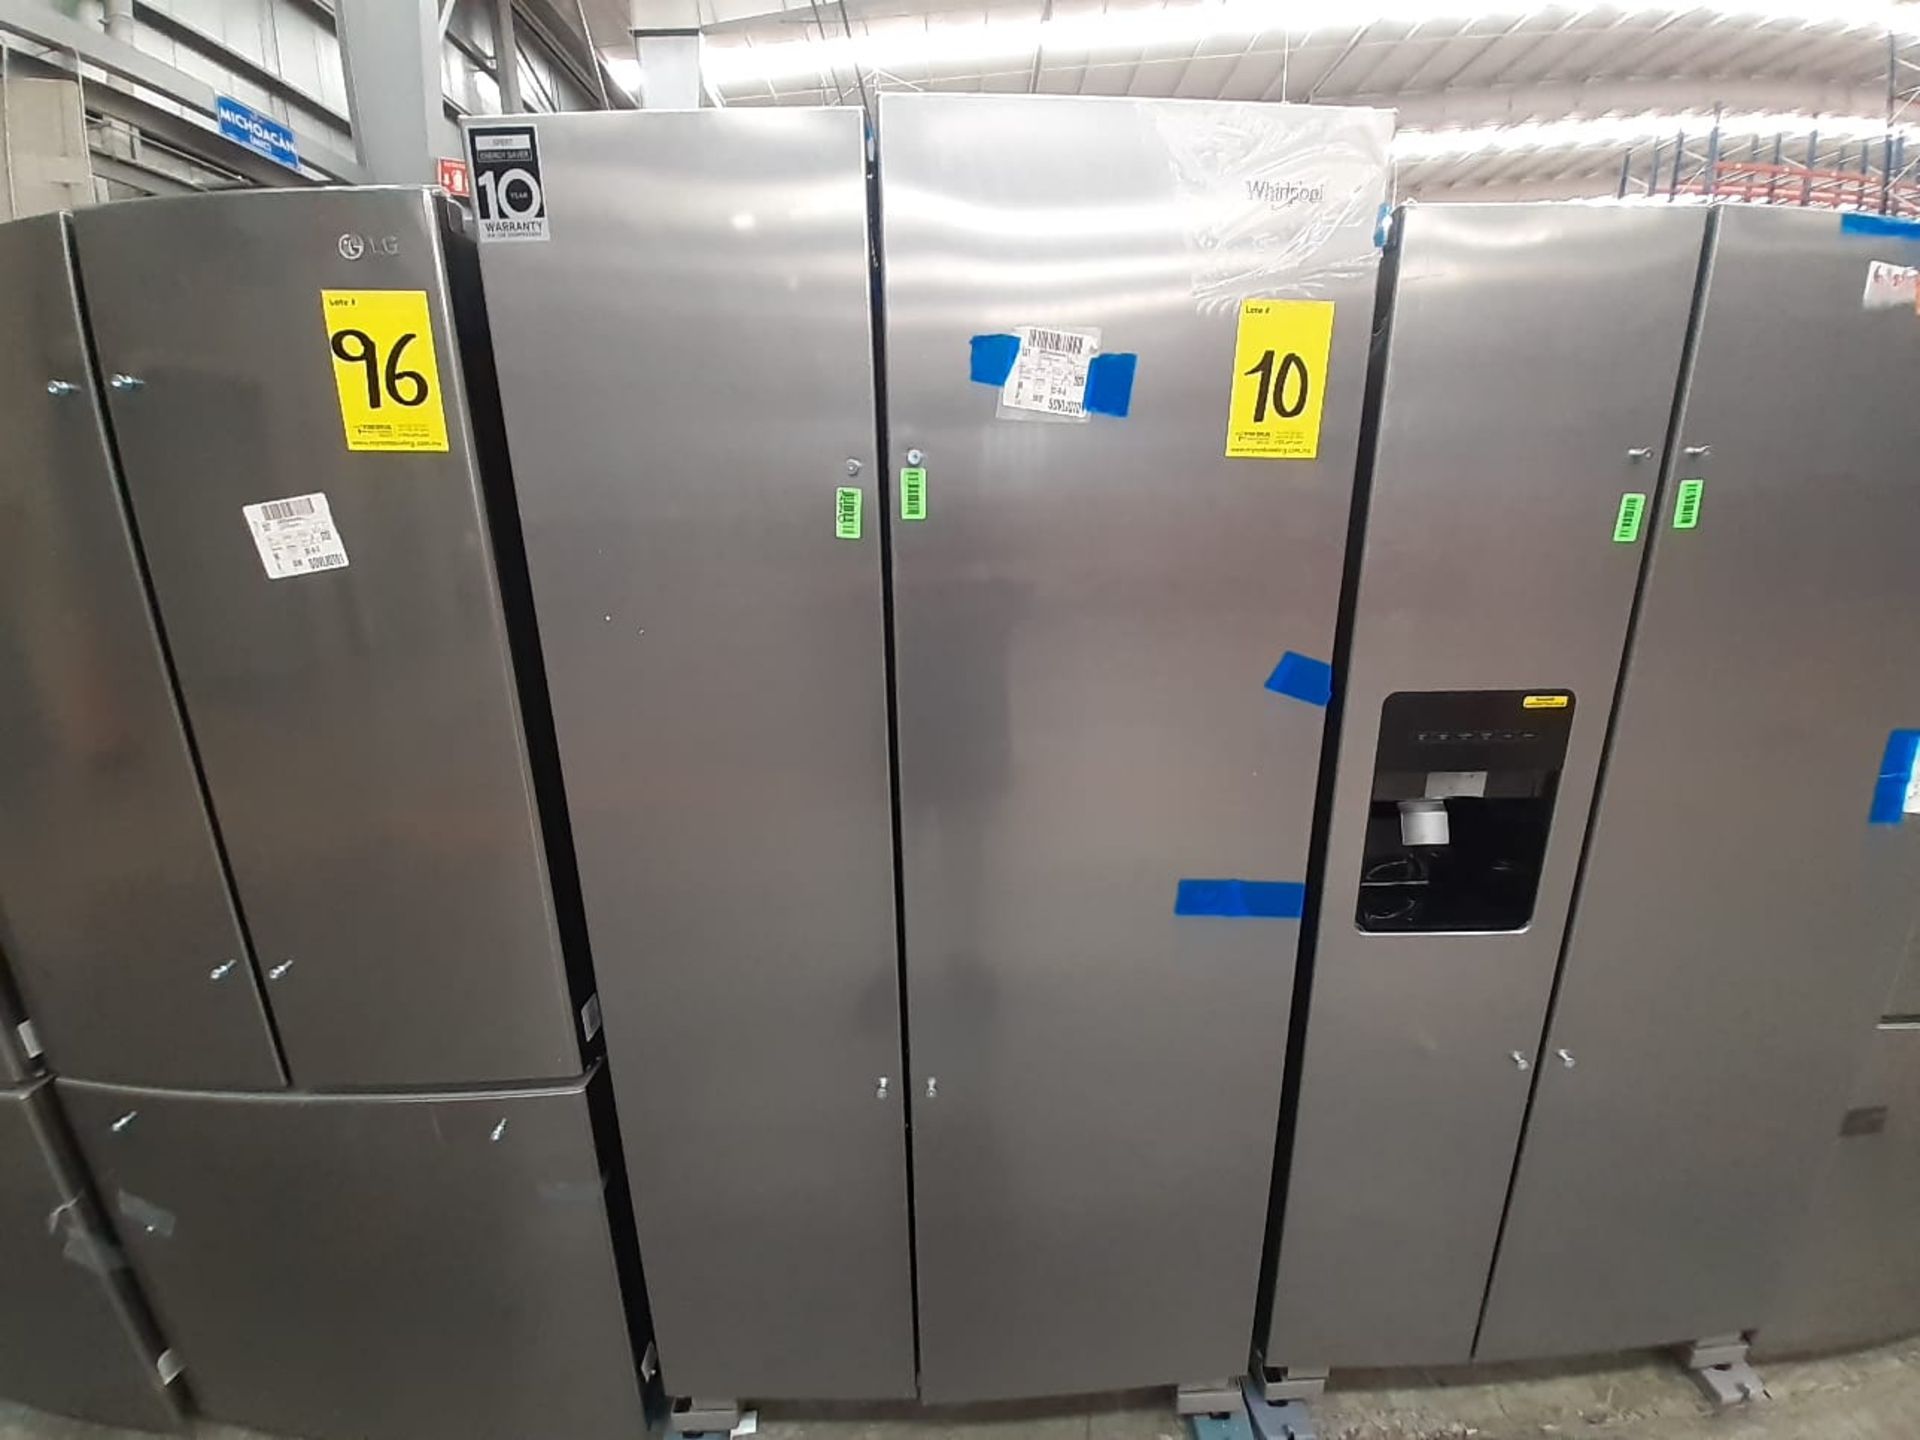 (Nuevo) Lote de 1 Refrigerador sin Dispensador de Agua Marca WHIRLPOOL, Modelo WD56C0S, Serie 82188